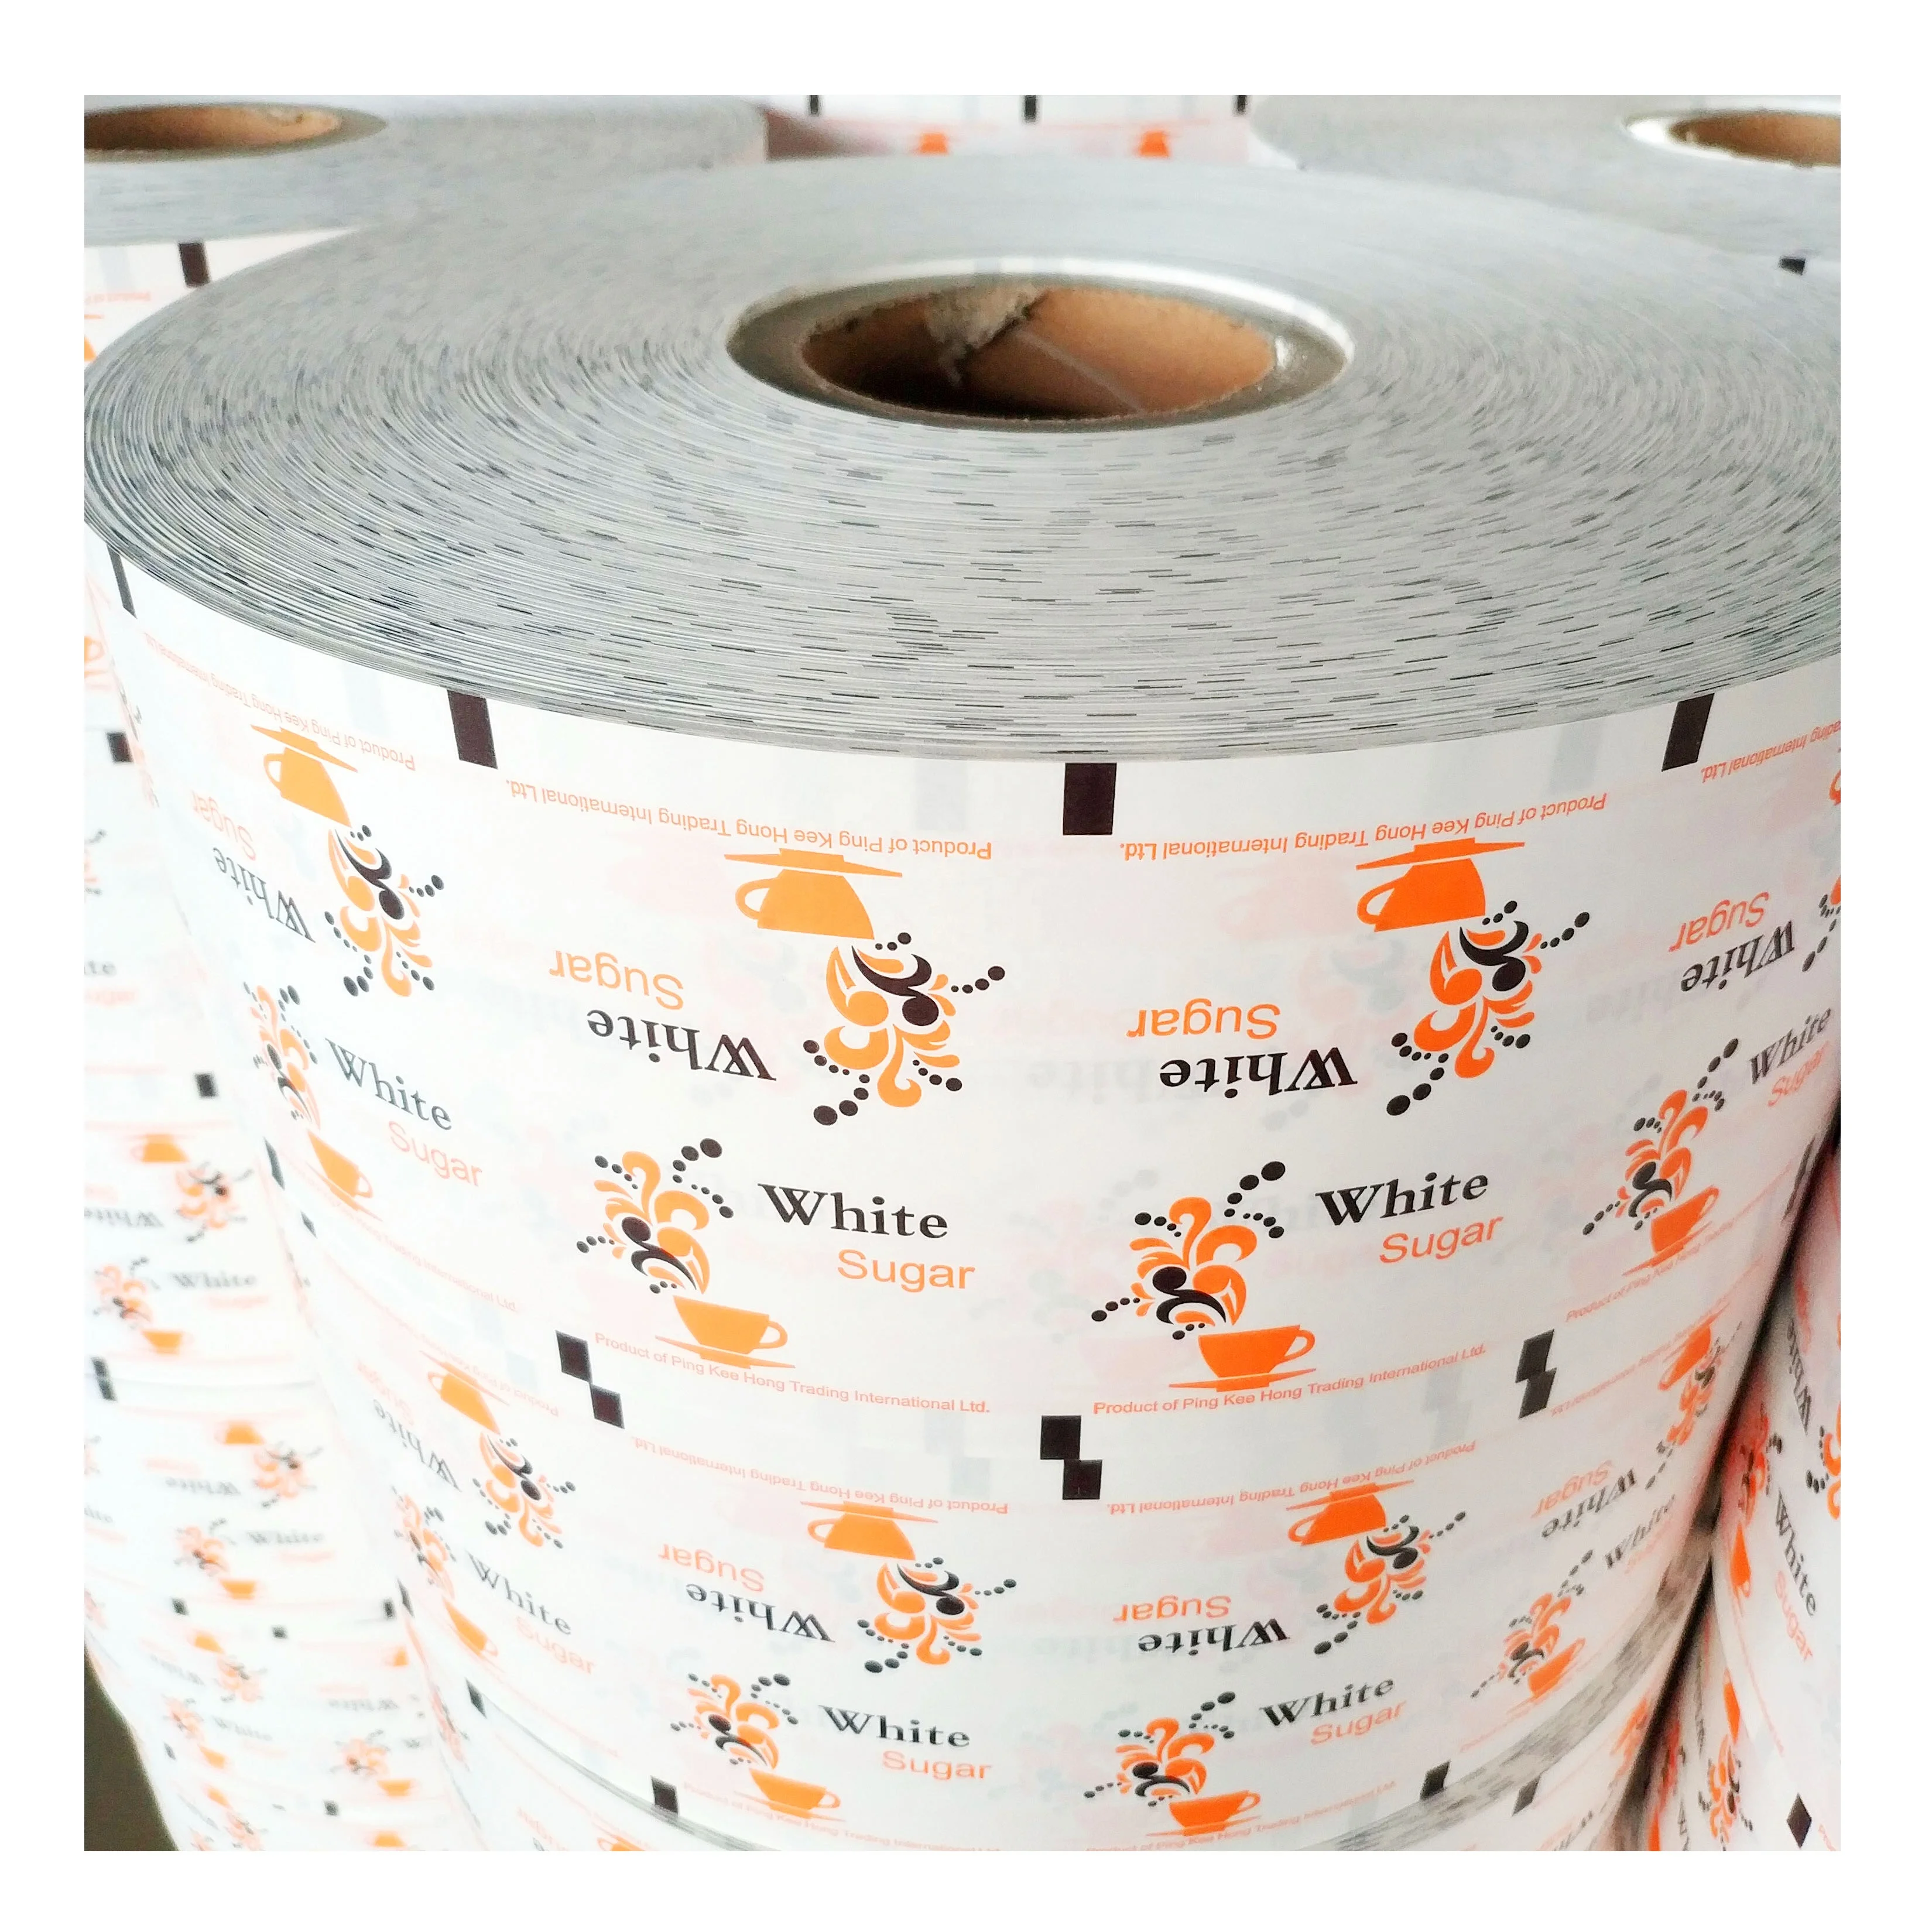 纸制品包装及印刷印刷|中国纸制品包装与印刷市场规模及发展趋势